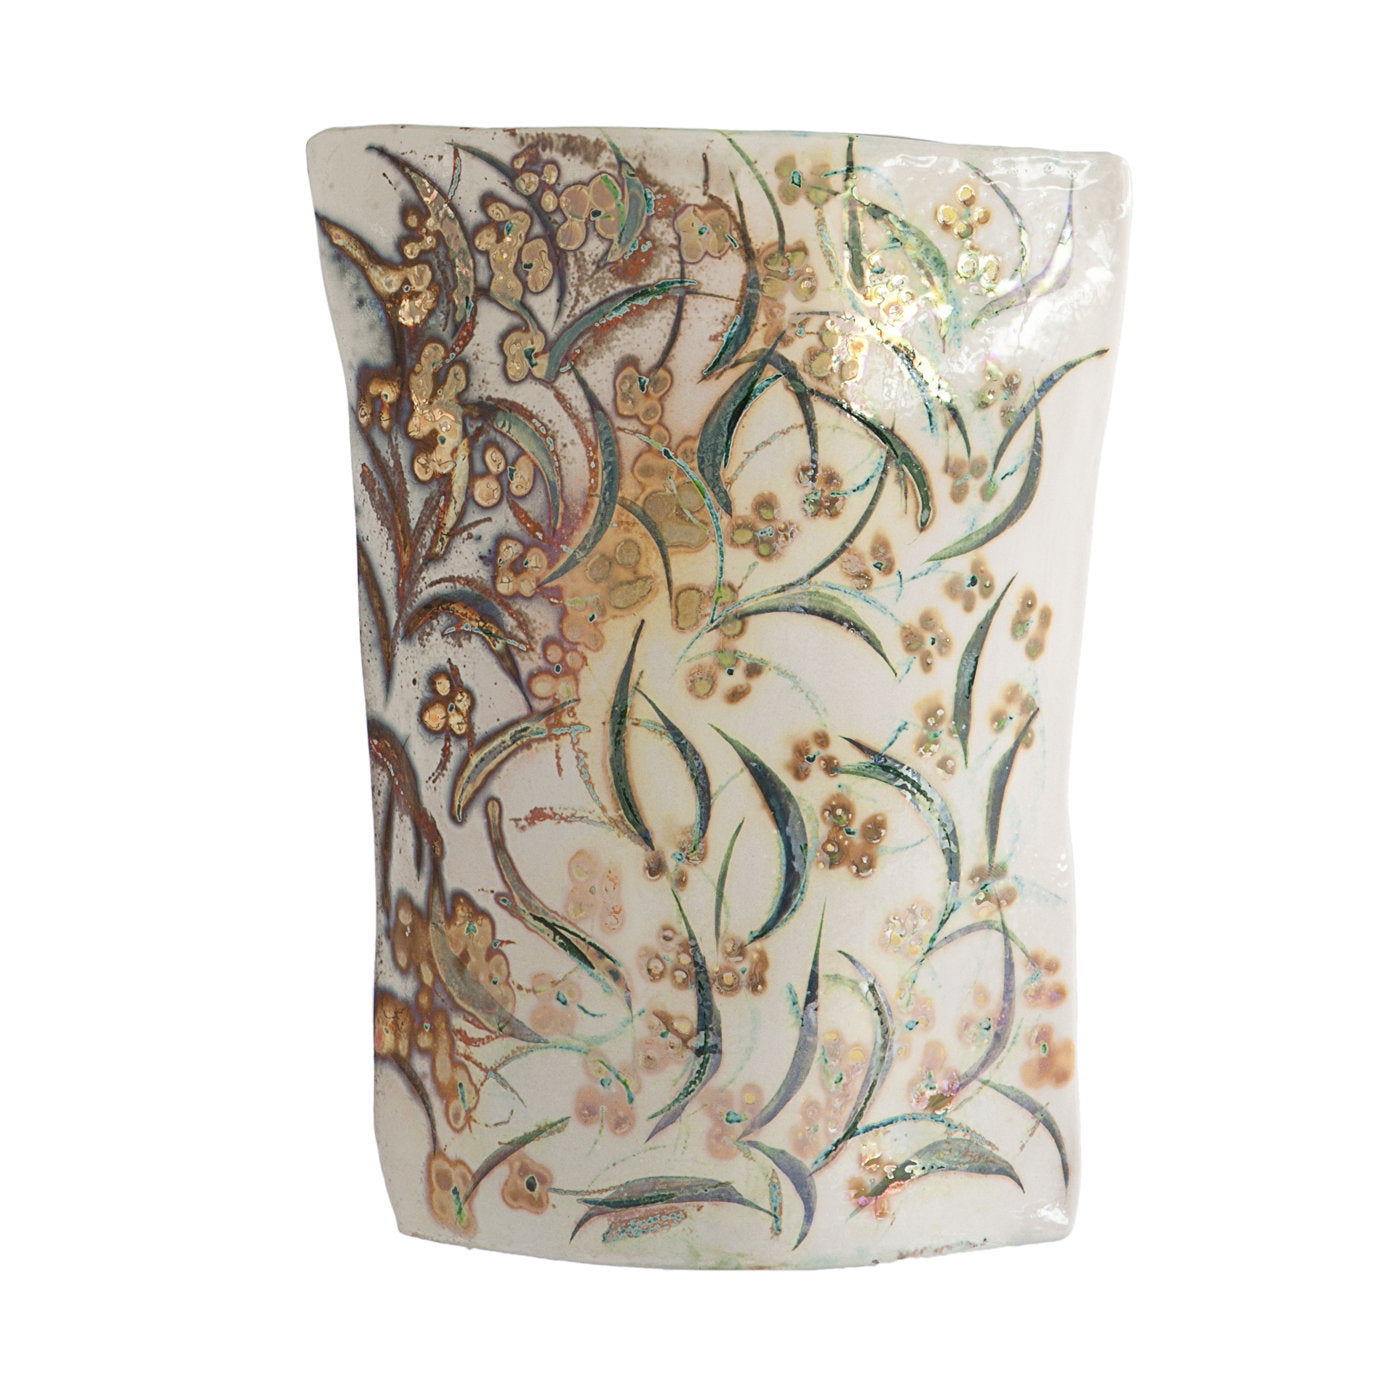 William Morris Vase - Main view